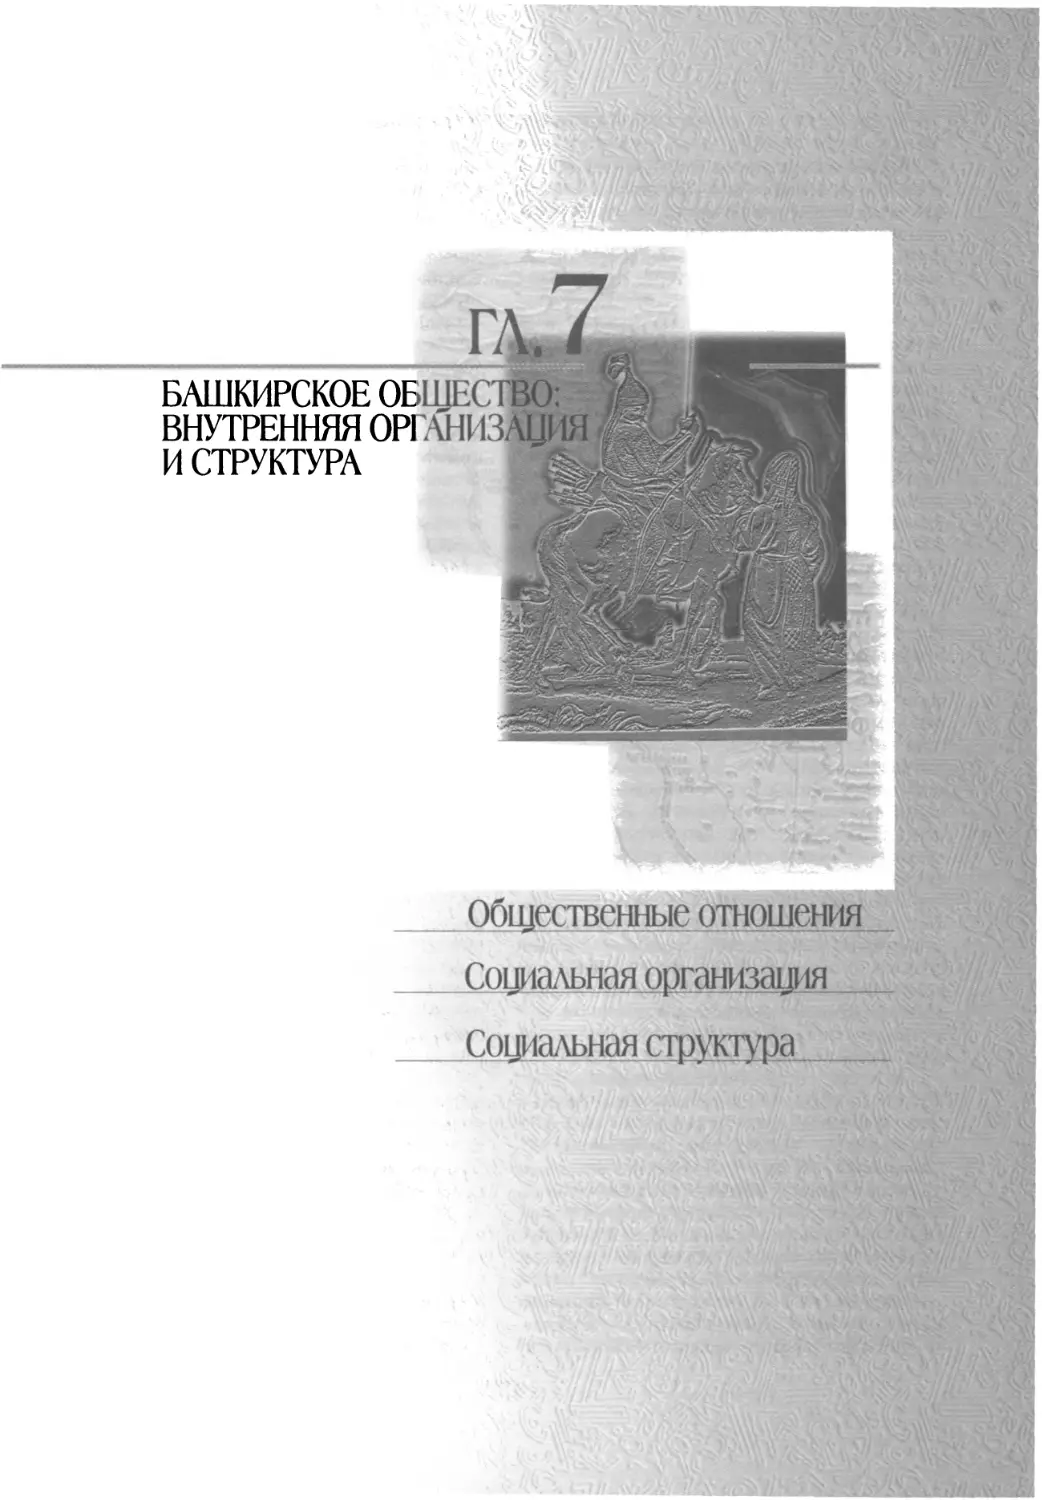 Глава 7. Башкирское общество: внутренняя организация и структура